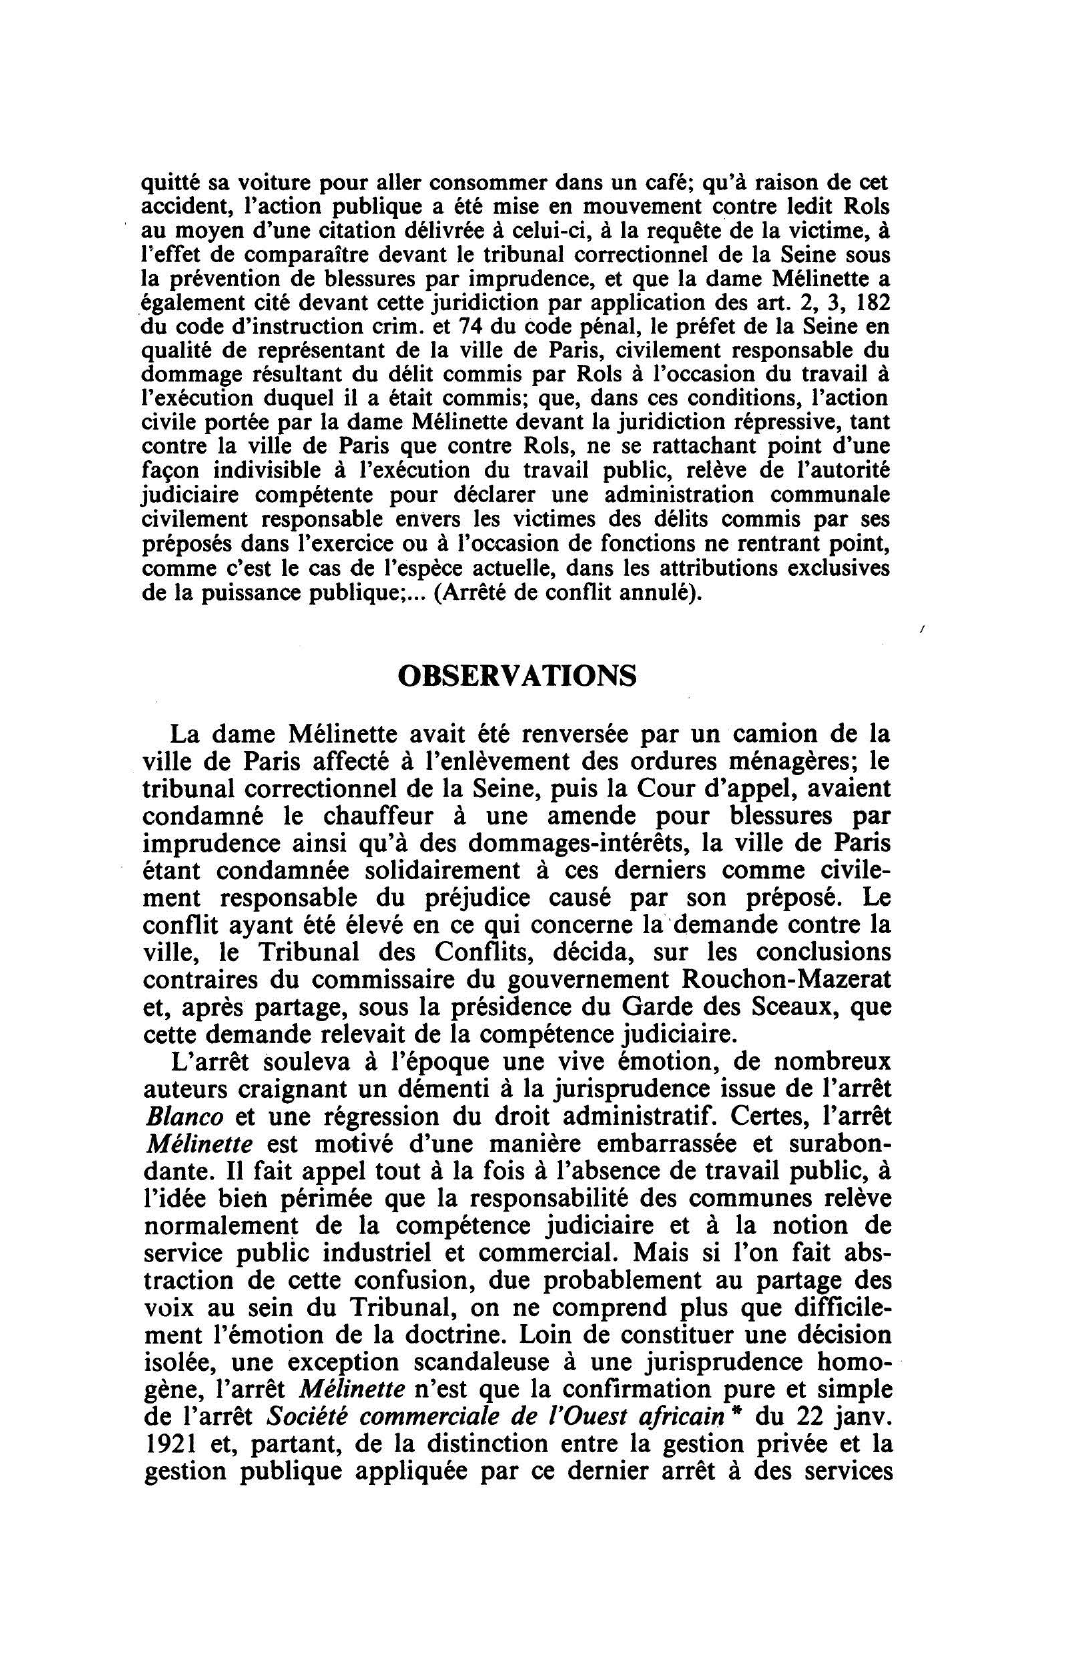 Prévisualisation du document COMPÉTENCE - SERVICES PUBLICS INDUSTRIELS ET COMMERCIAUX T. C. 11 juill. 1933, Dame MELINETTE, Rec. 1237, concl. Rouchon-Mazerat (S. 1933.3.97, note Alibert; D. 1933.3.65, concl. Rouchon-Mazerat, note Blaevoet; R.D.P. 1933.426, concl. Rouchon-Mazerat, note Jèze)